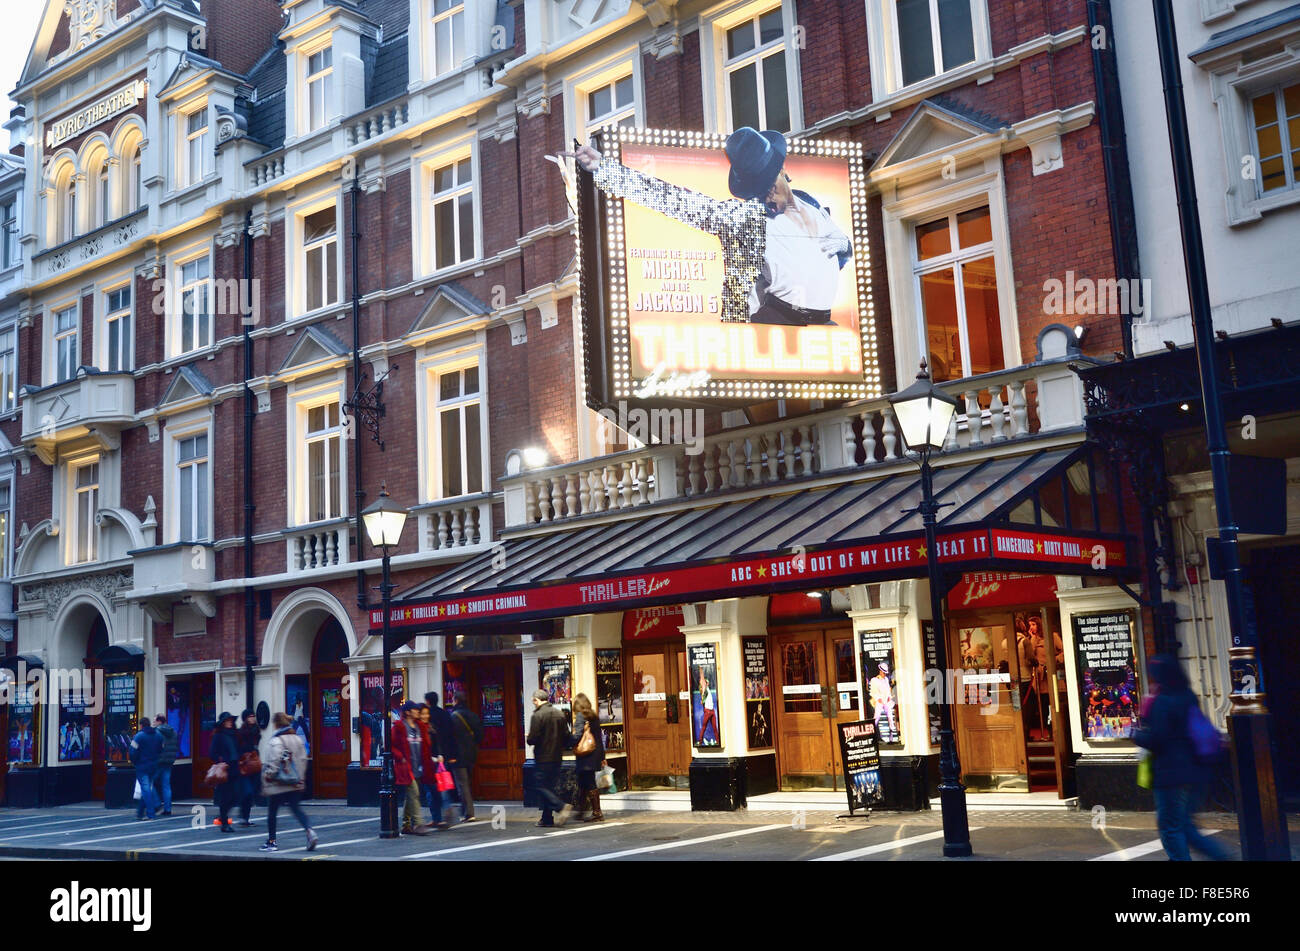 Le Lyric Theatre est un théâtre du West End sur Shaftesbury Avenue dans la ville de Westminster. Thriller Live. London, England, UK Banque D'Images